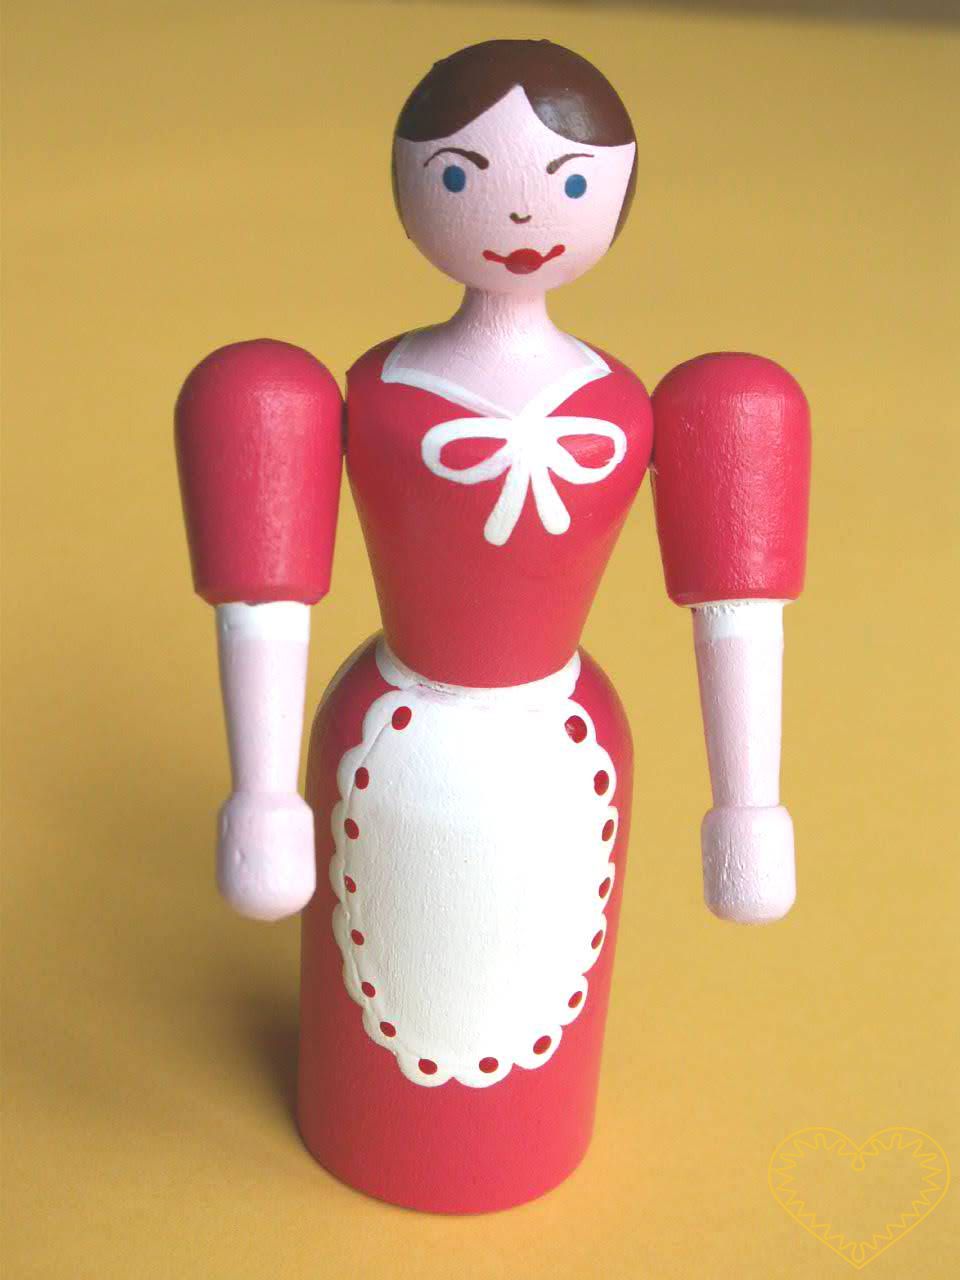 Velká dřevěná panenka. Krásně malovaný suvenýr vycházející ze vzorů tradičních dětských dřevěných hraček. Soustružená panenka má pohyblivé ruce ve směru nahoru - dolu.